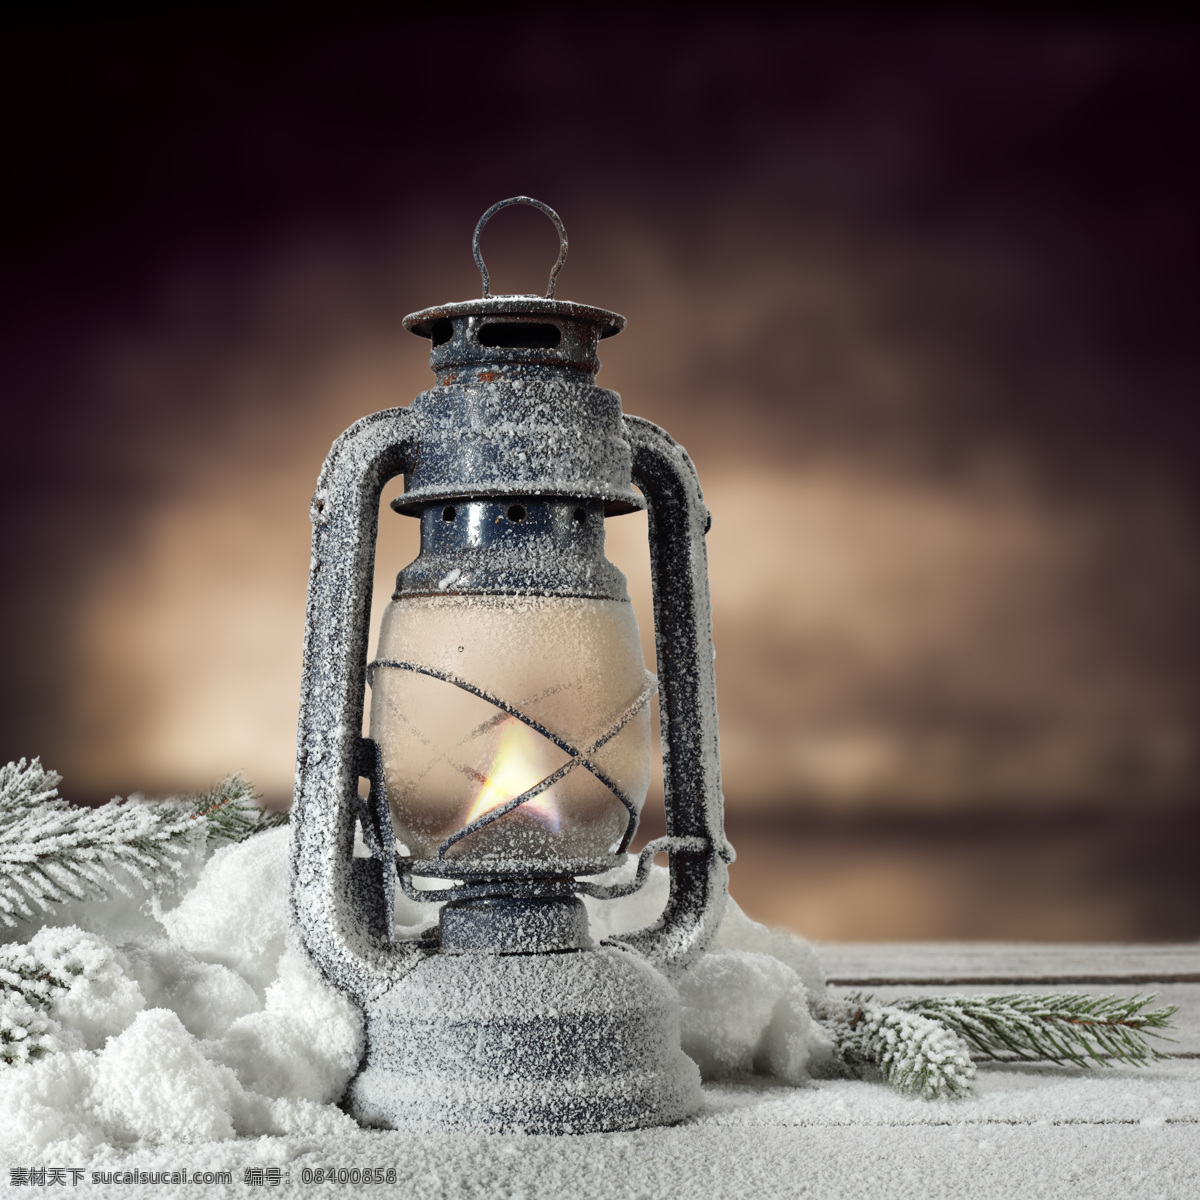 雪 中 油灯 雪中的油灯 照明工具 白雪 松枝 生活用品 生活百科